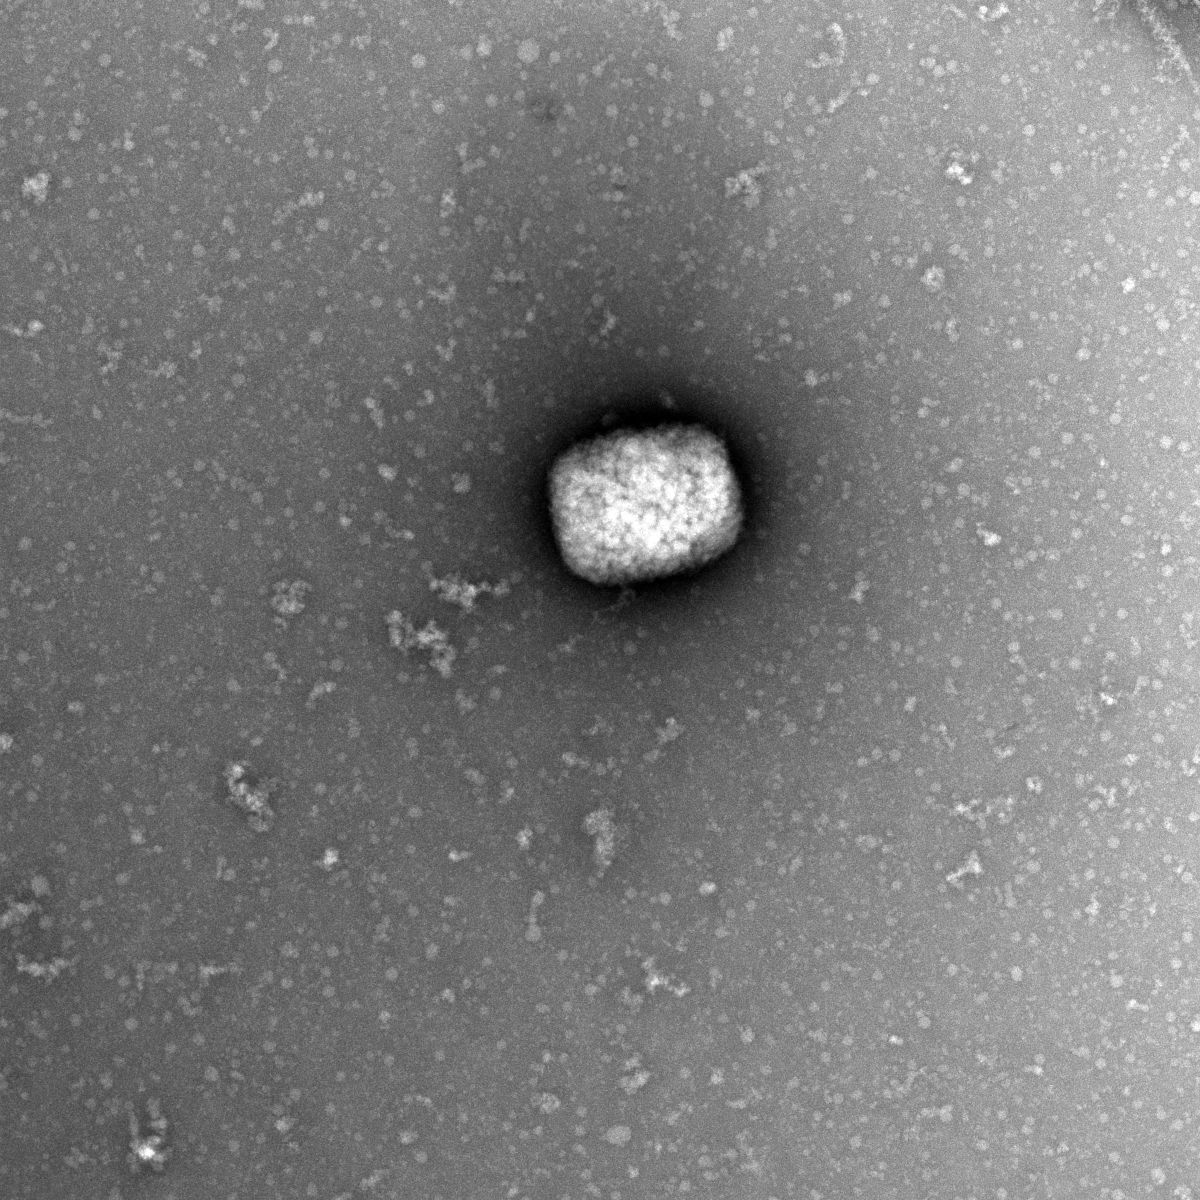 Partículas virales del virus del mono observadas con microscopio electrónico.